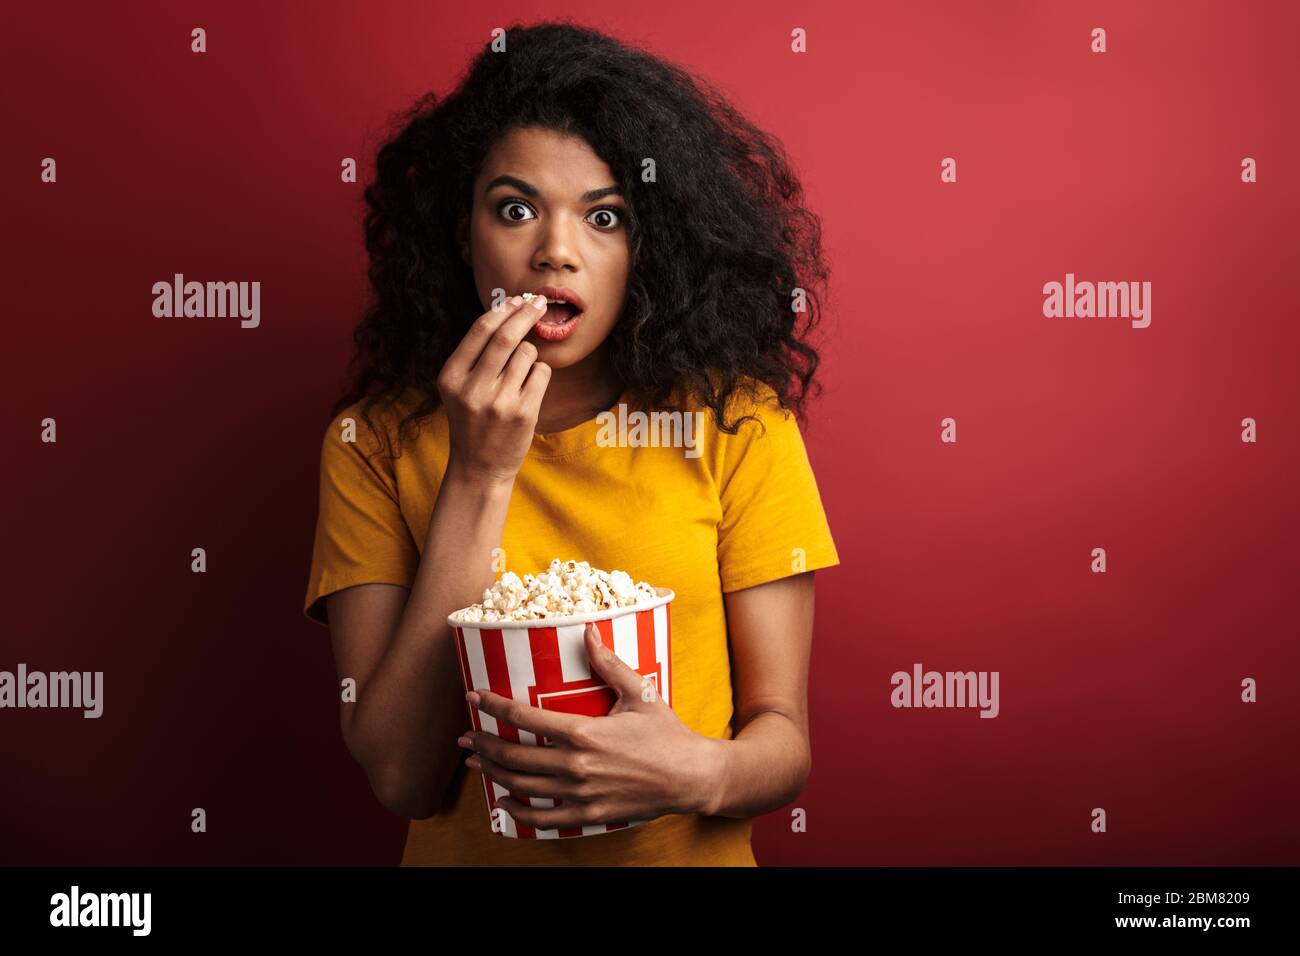 Immagine di una donna afro-americana scioccata brunette con capelli ricci che esprimono meraviglia mentre tenendo secchio popcorn isolato su sfondo rosso Foto Stock